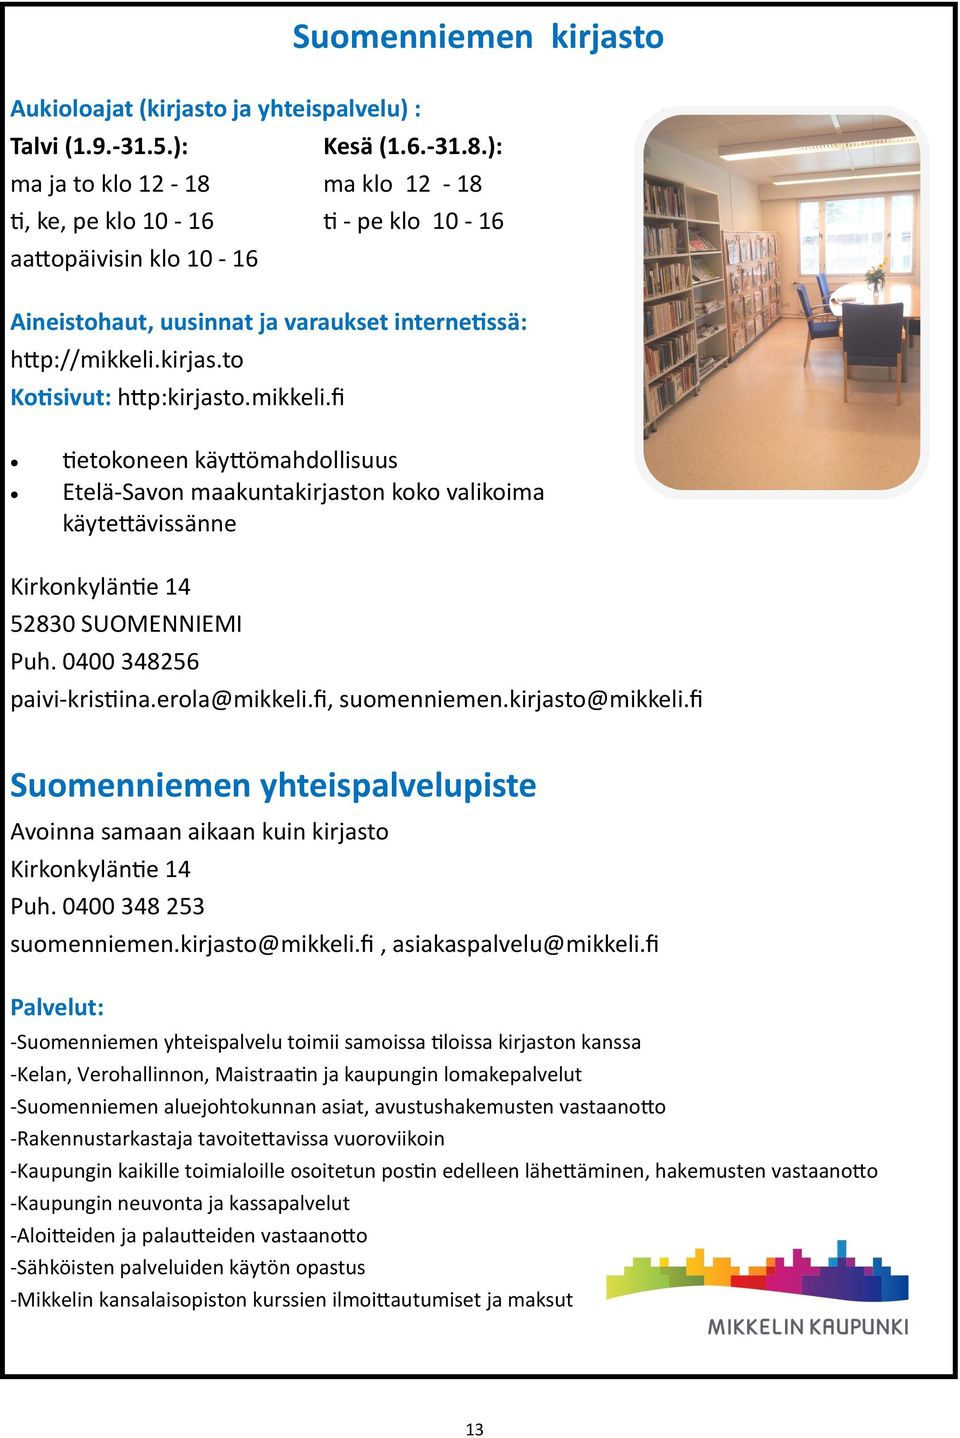 mikkeli.fi tietokoneen käyttömahdollisuus Etelä-Savon maakuntakirjaston koko valikoima käytettävissänne Kirkonkyläntie 14 52830 SUOMENNIEMI Puh. 0400 348256 paivi-kristiina.erola@mikkeli.